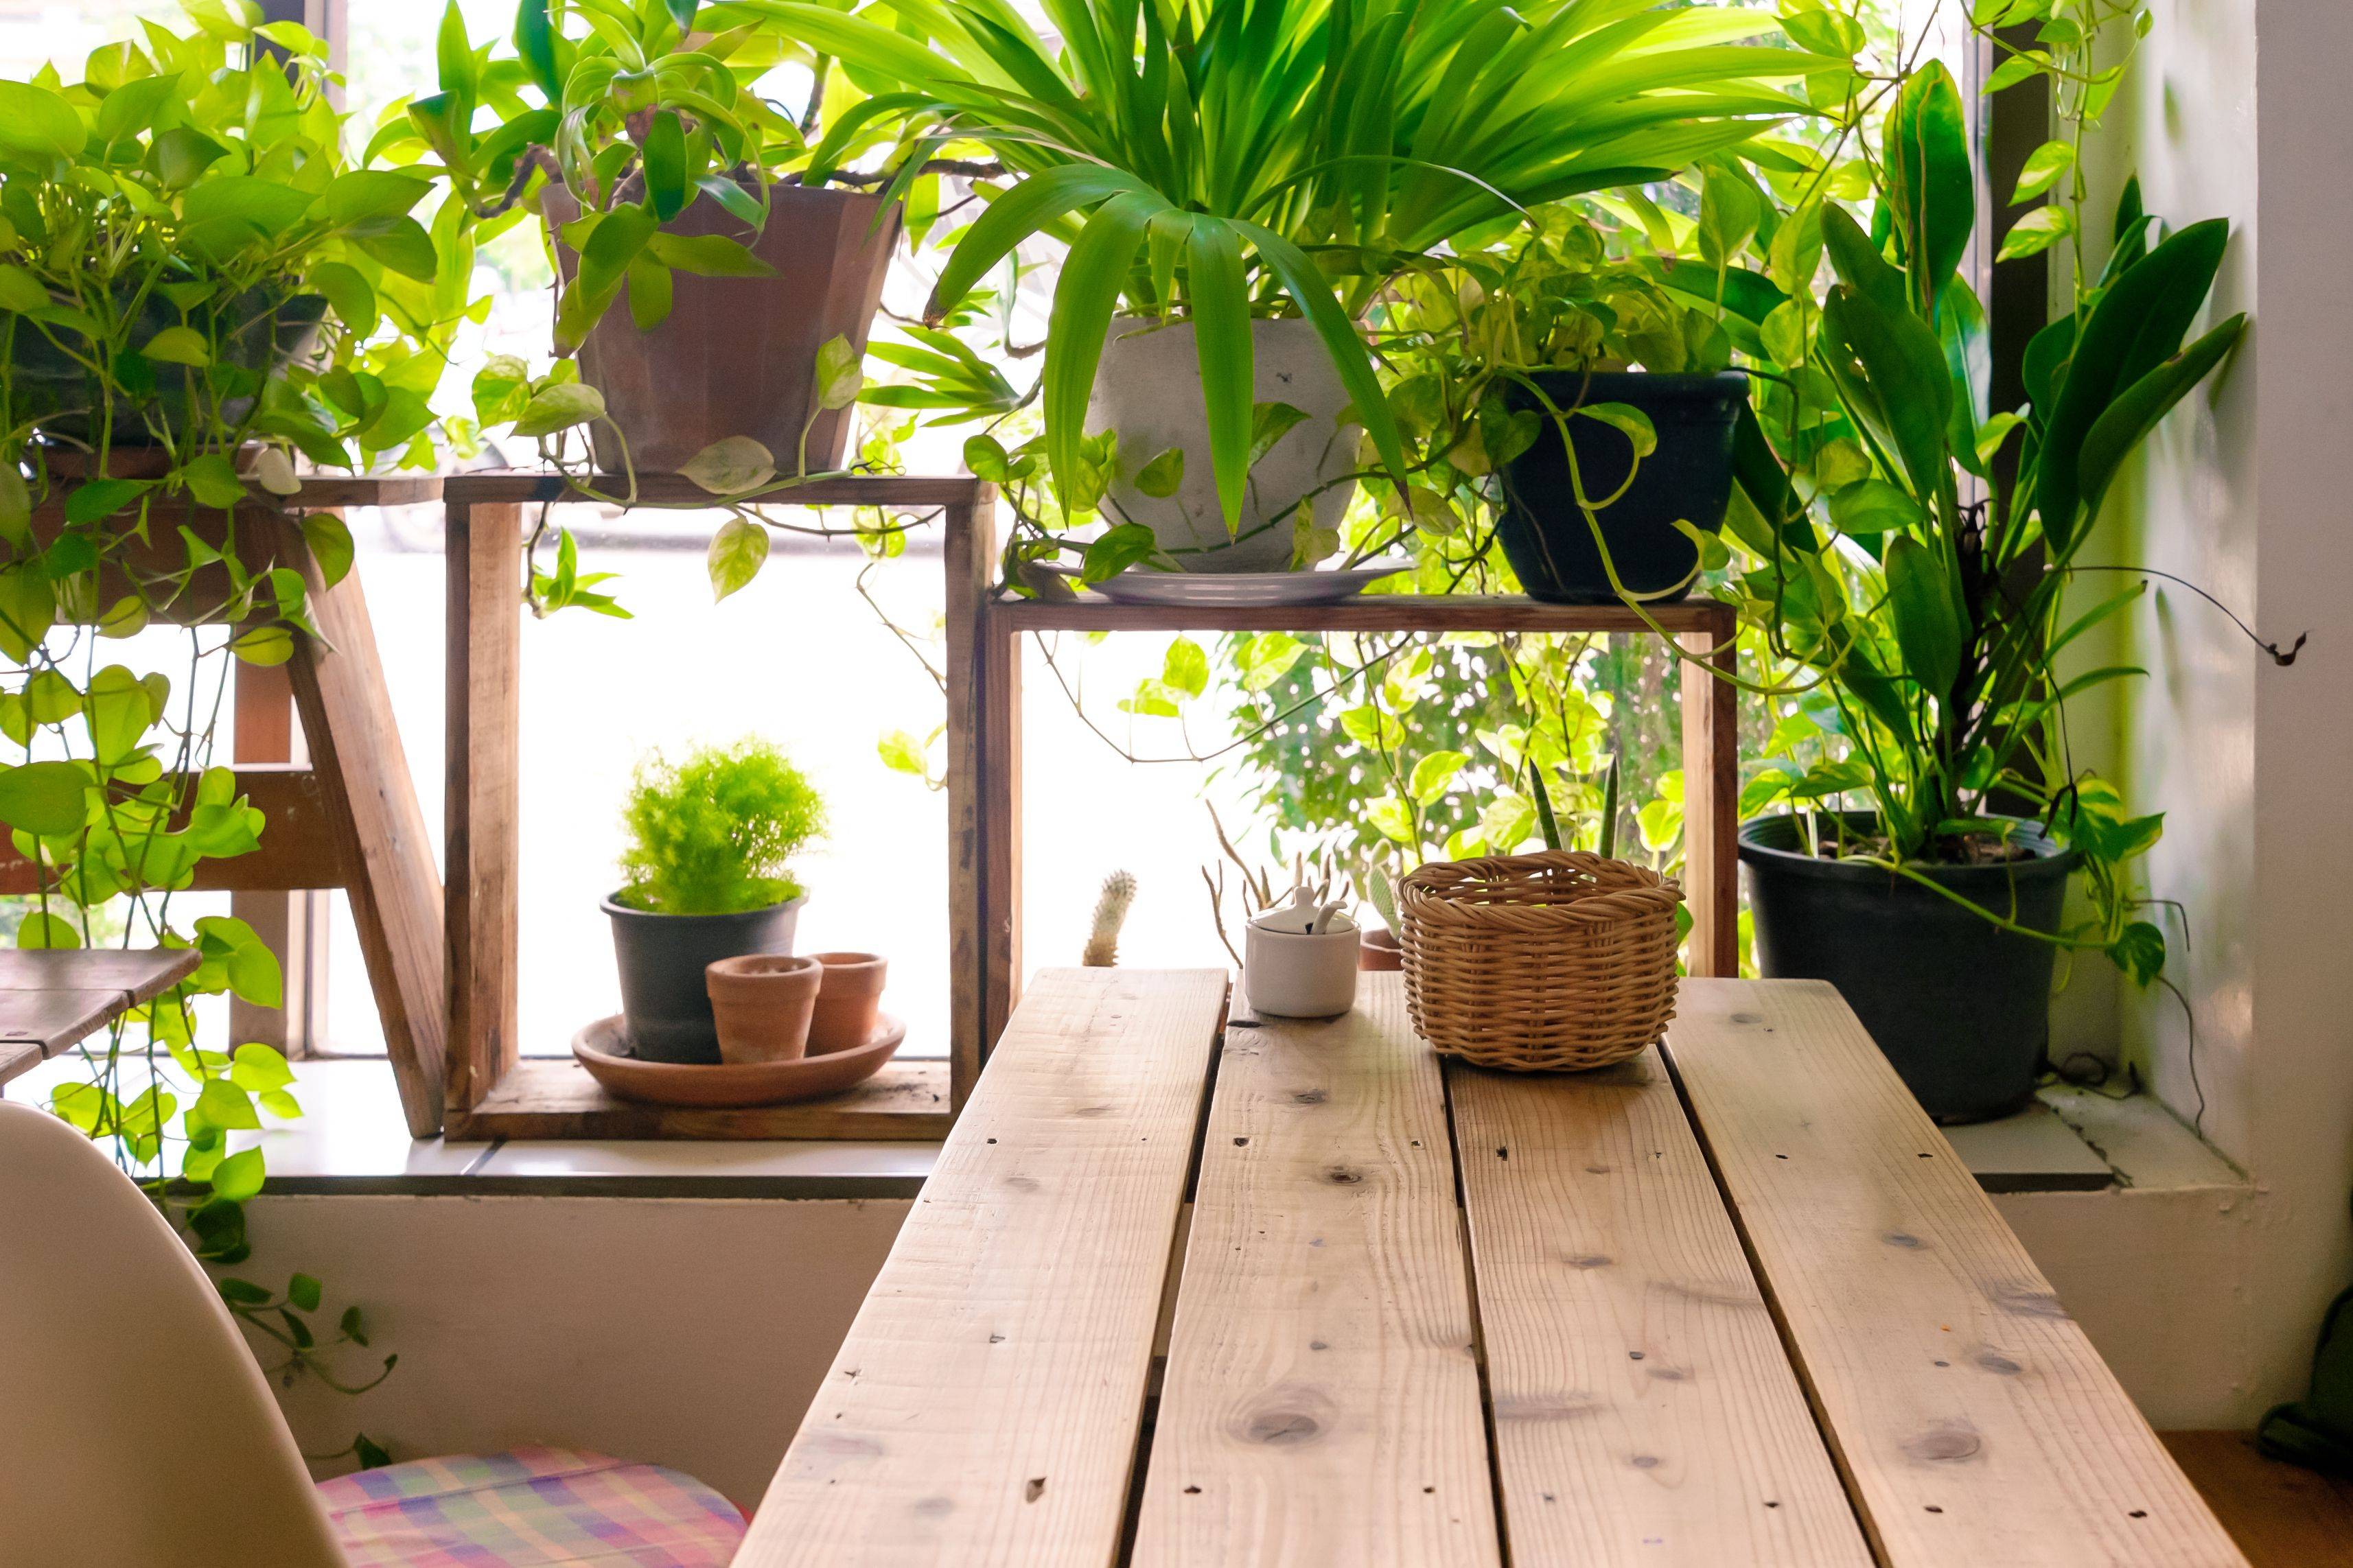 8 комнатных растений, которые не боятся сквозняков